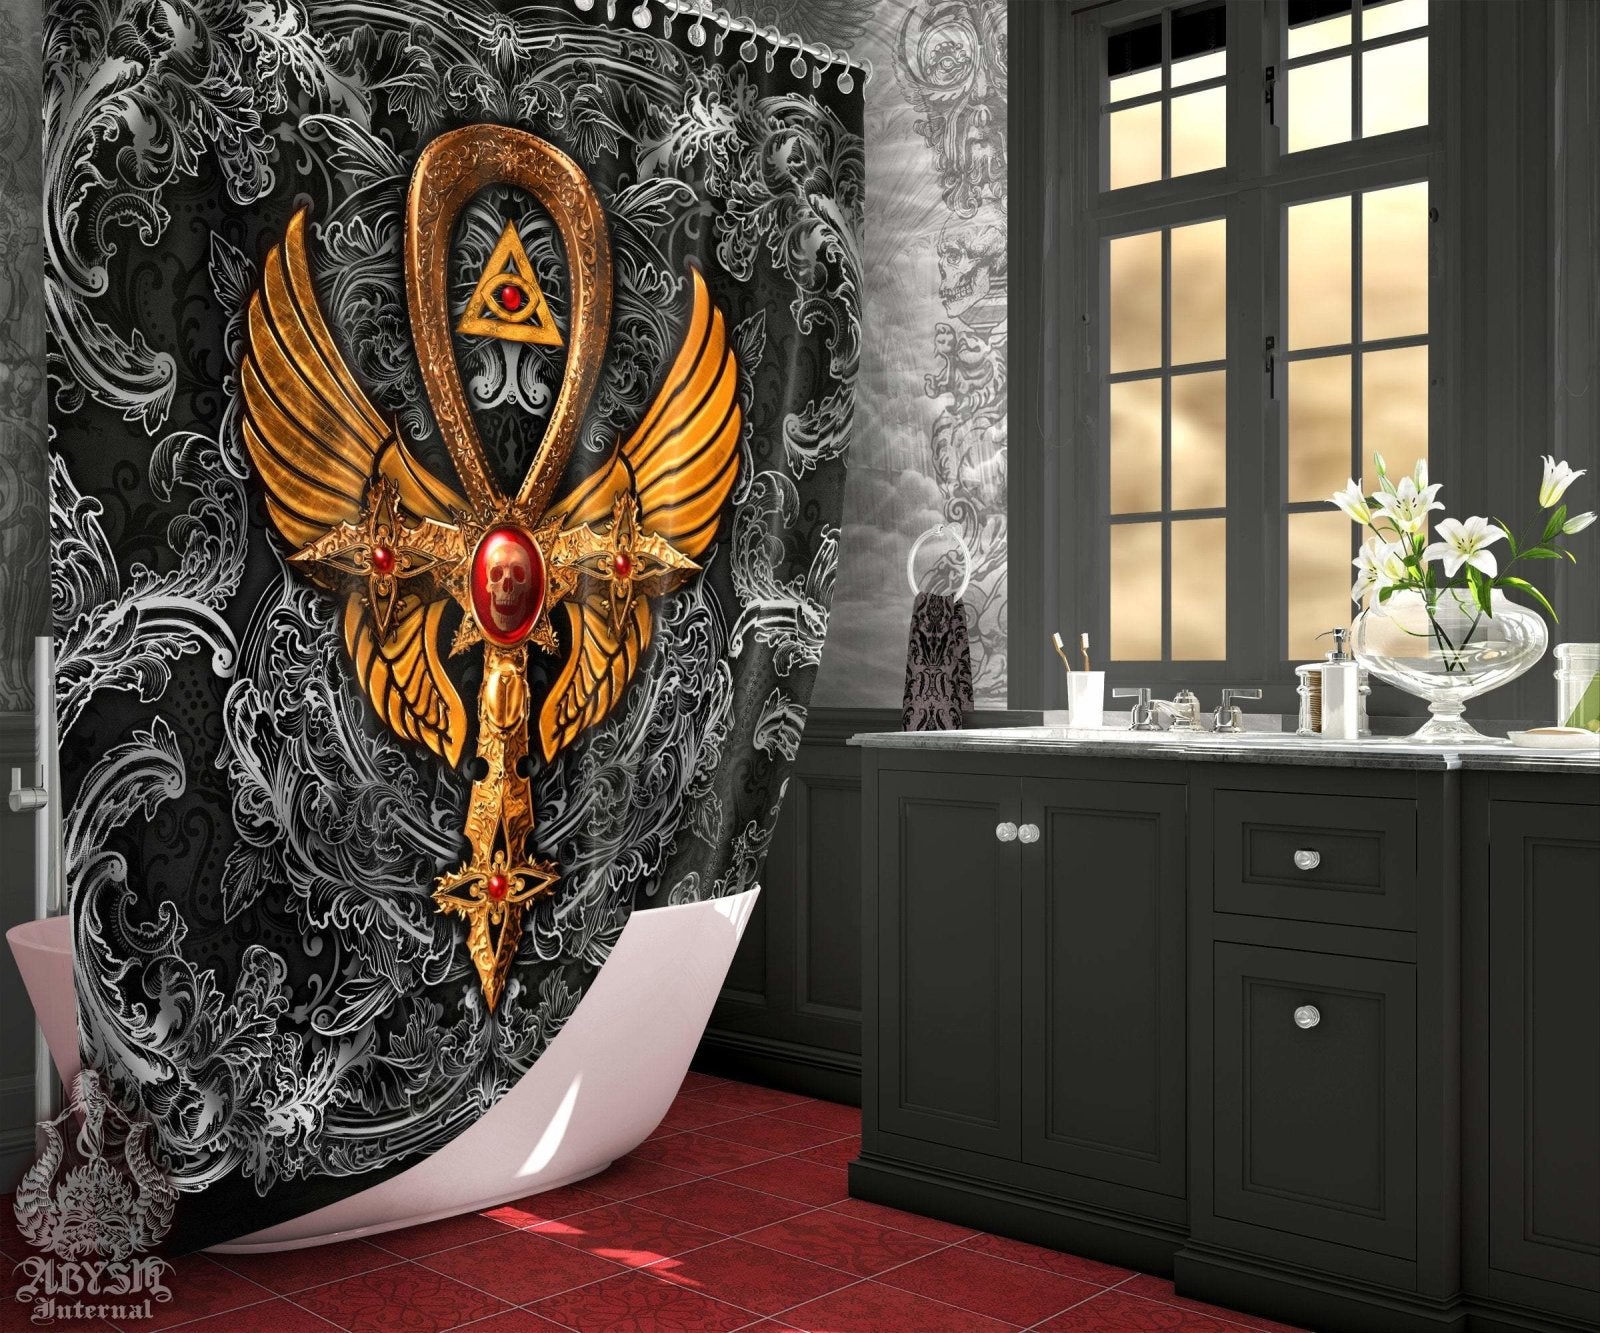 Gothic Shower Curtain, Goth Ankh Cross, Dark Bathroom Decor, Occult - Black & Gold - Abysm Internal